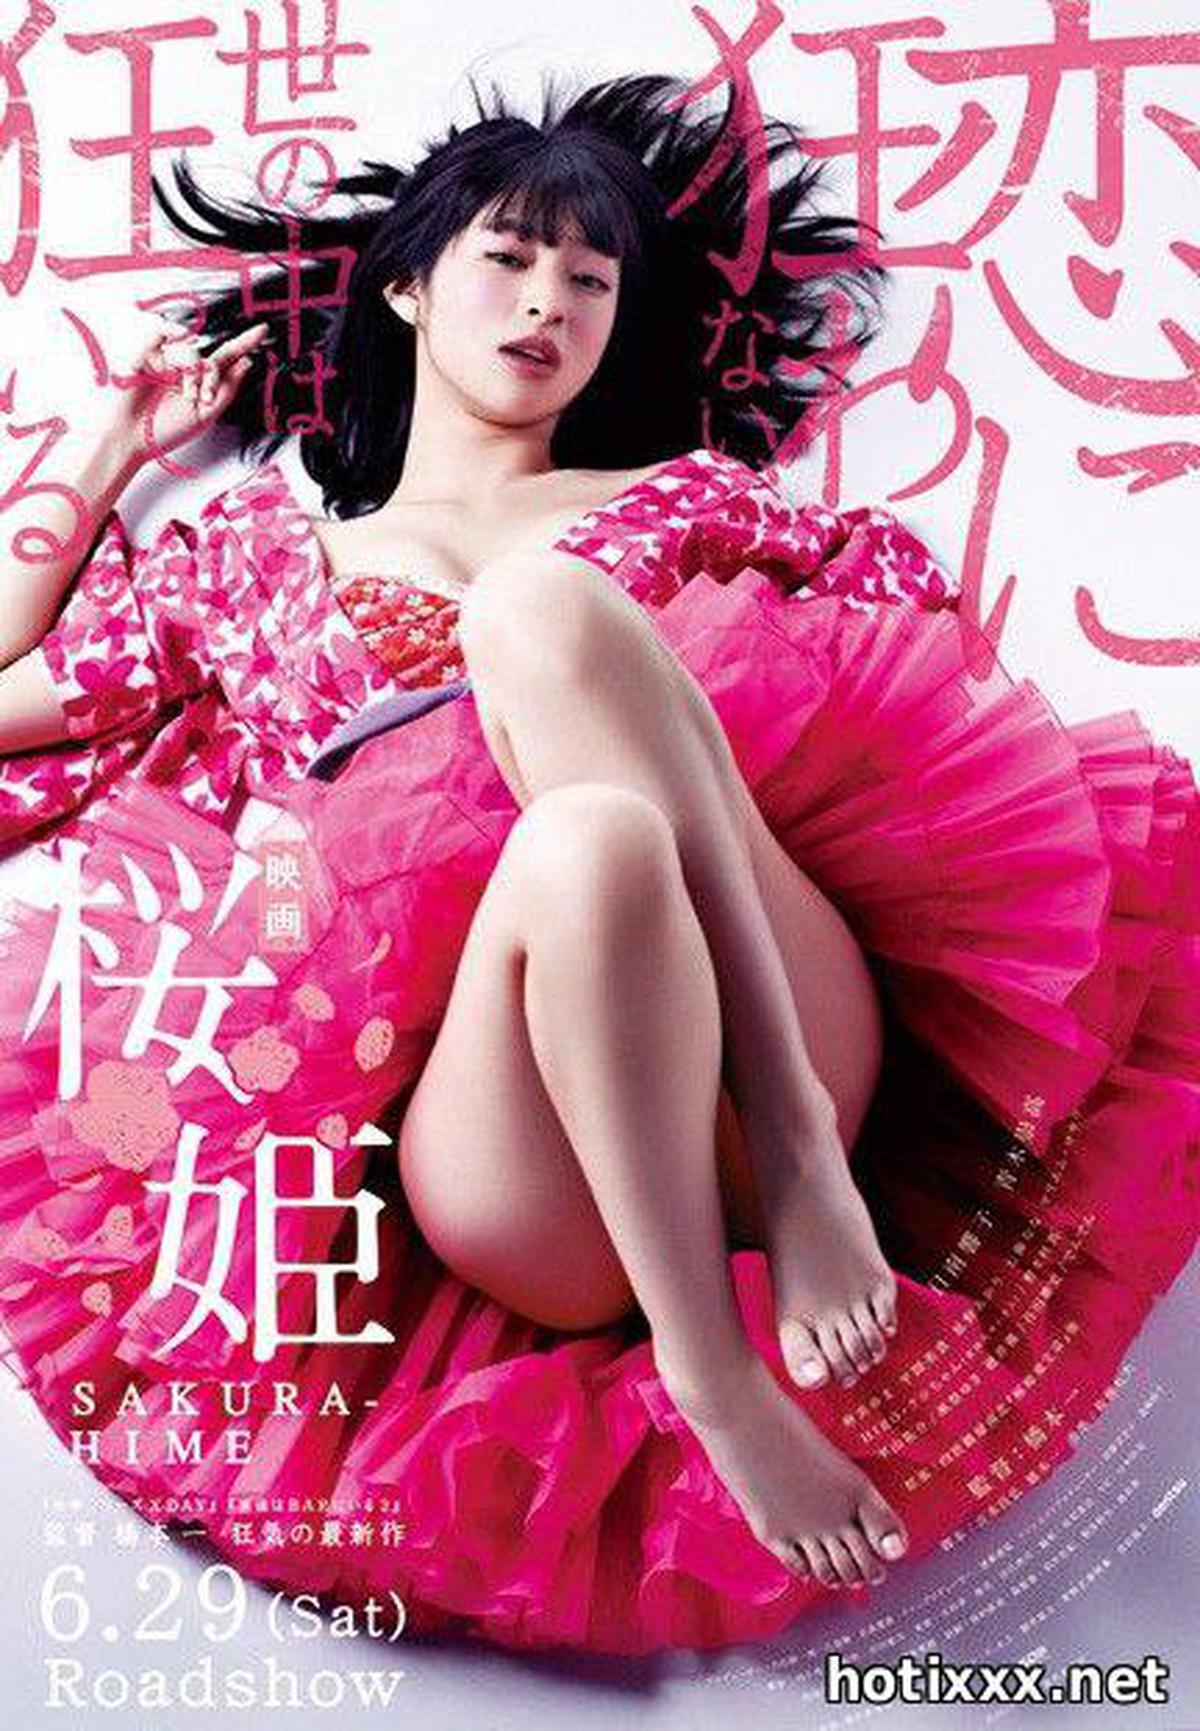 桜姫 / Sakura hime / Princess Sakura: Forbidden Pleasures (2013)